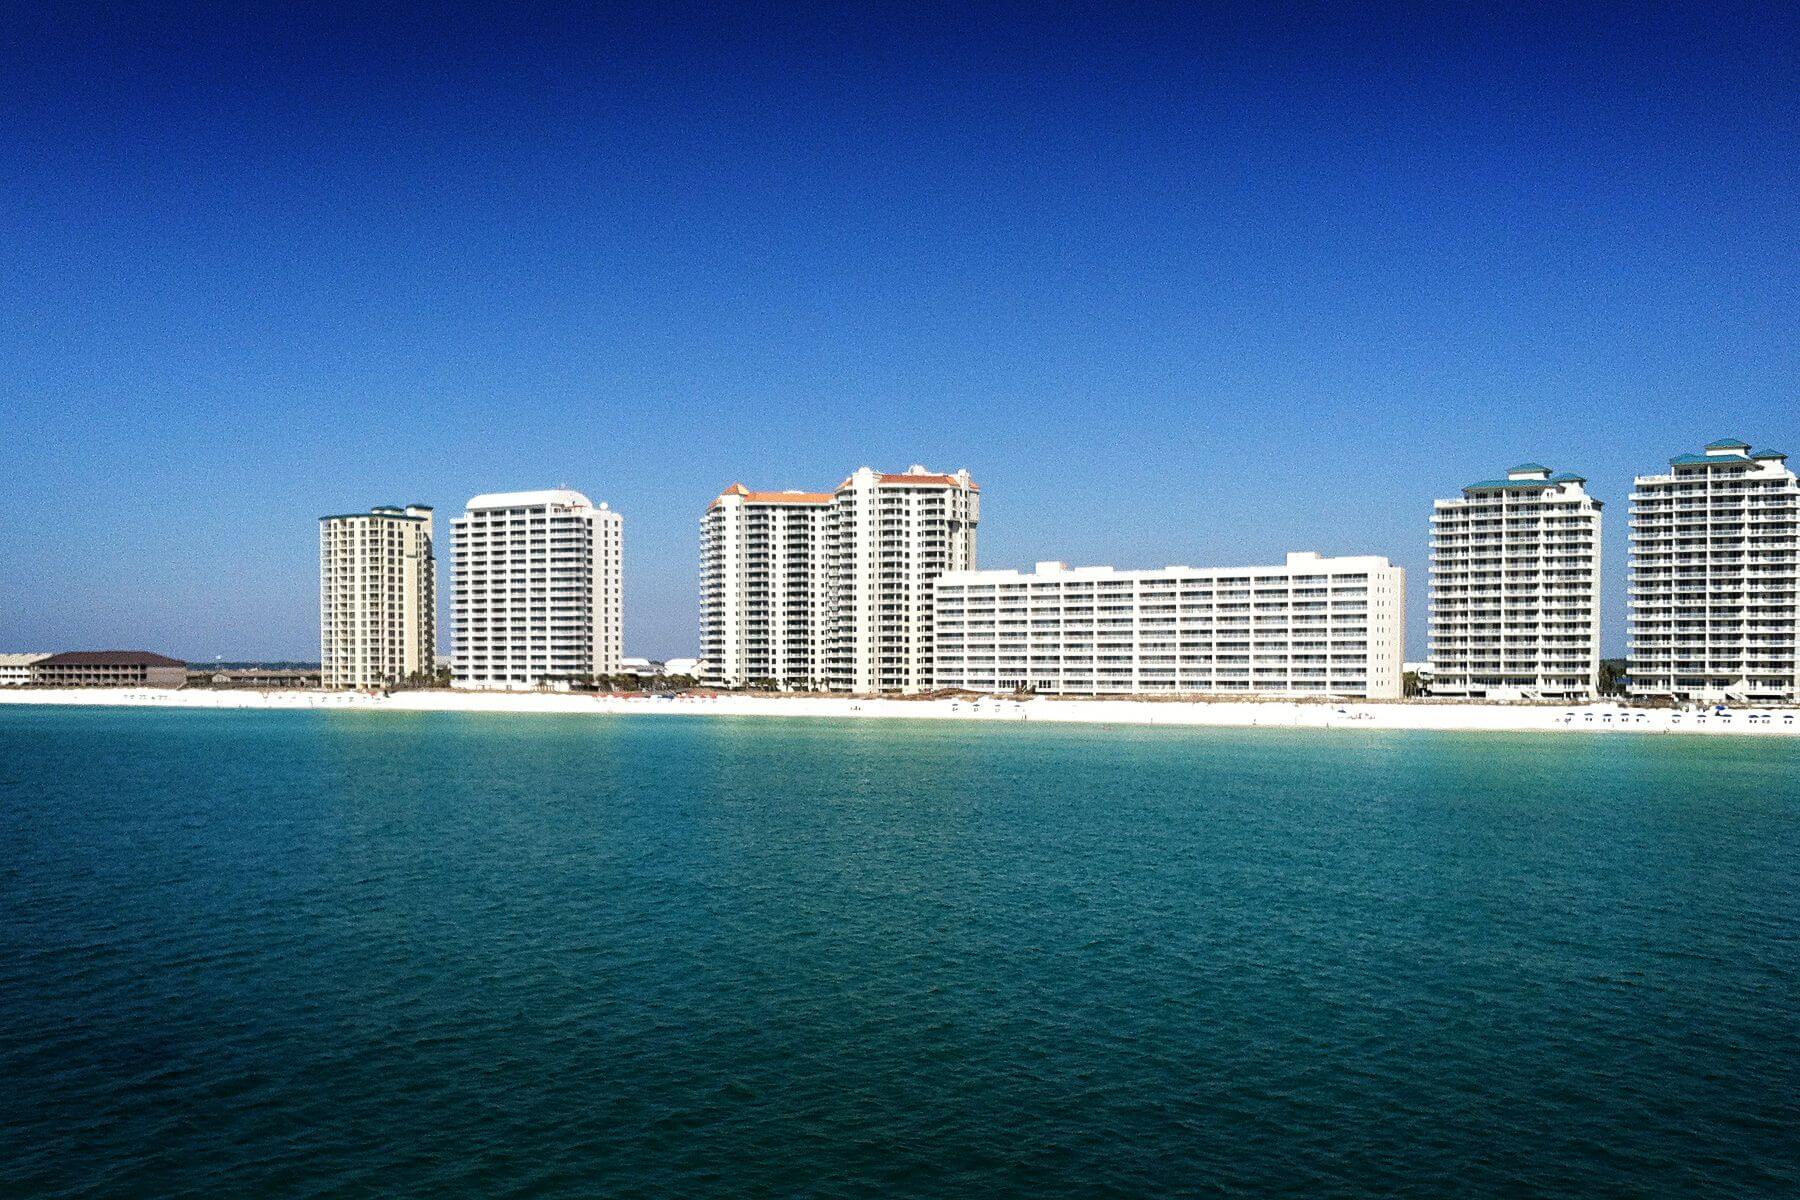 Condominiums along the beachshore.